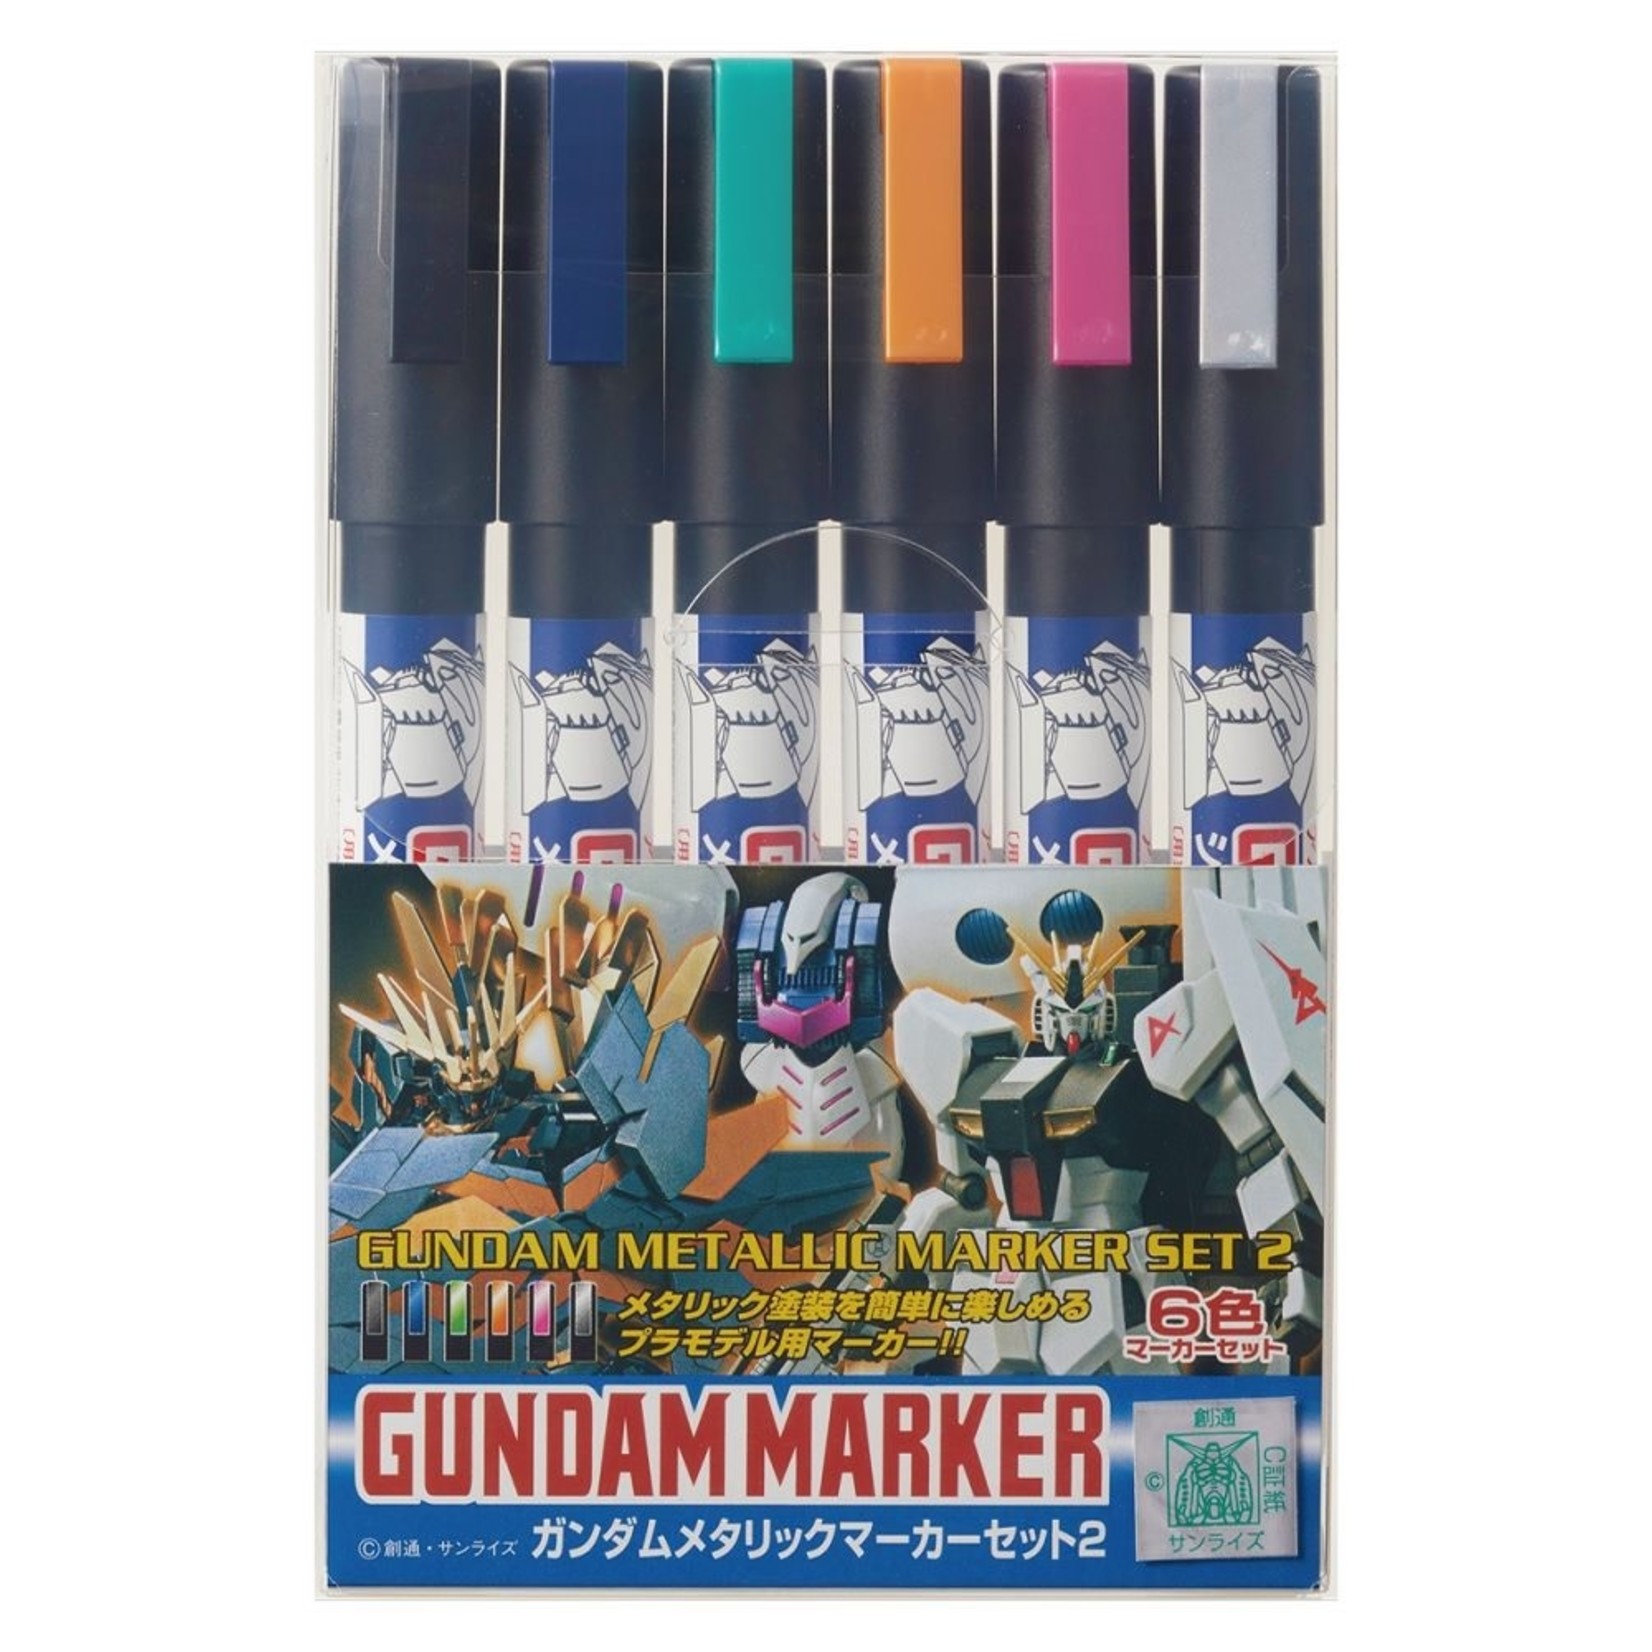 Mr. Hobby Gundam Marker Metallic 2 (6) Set